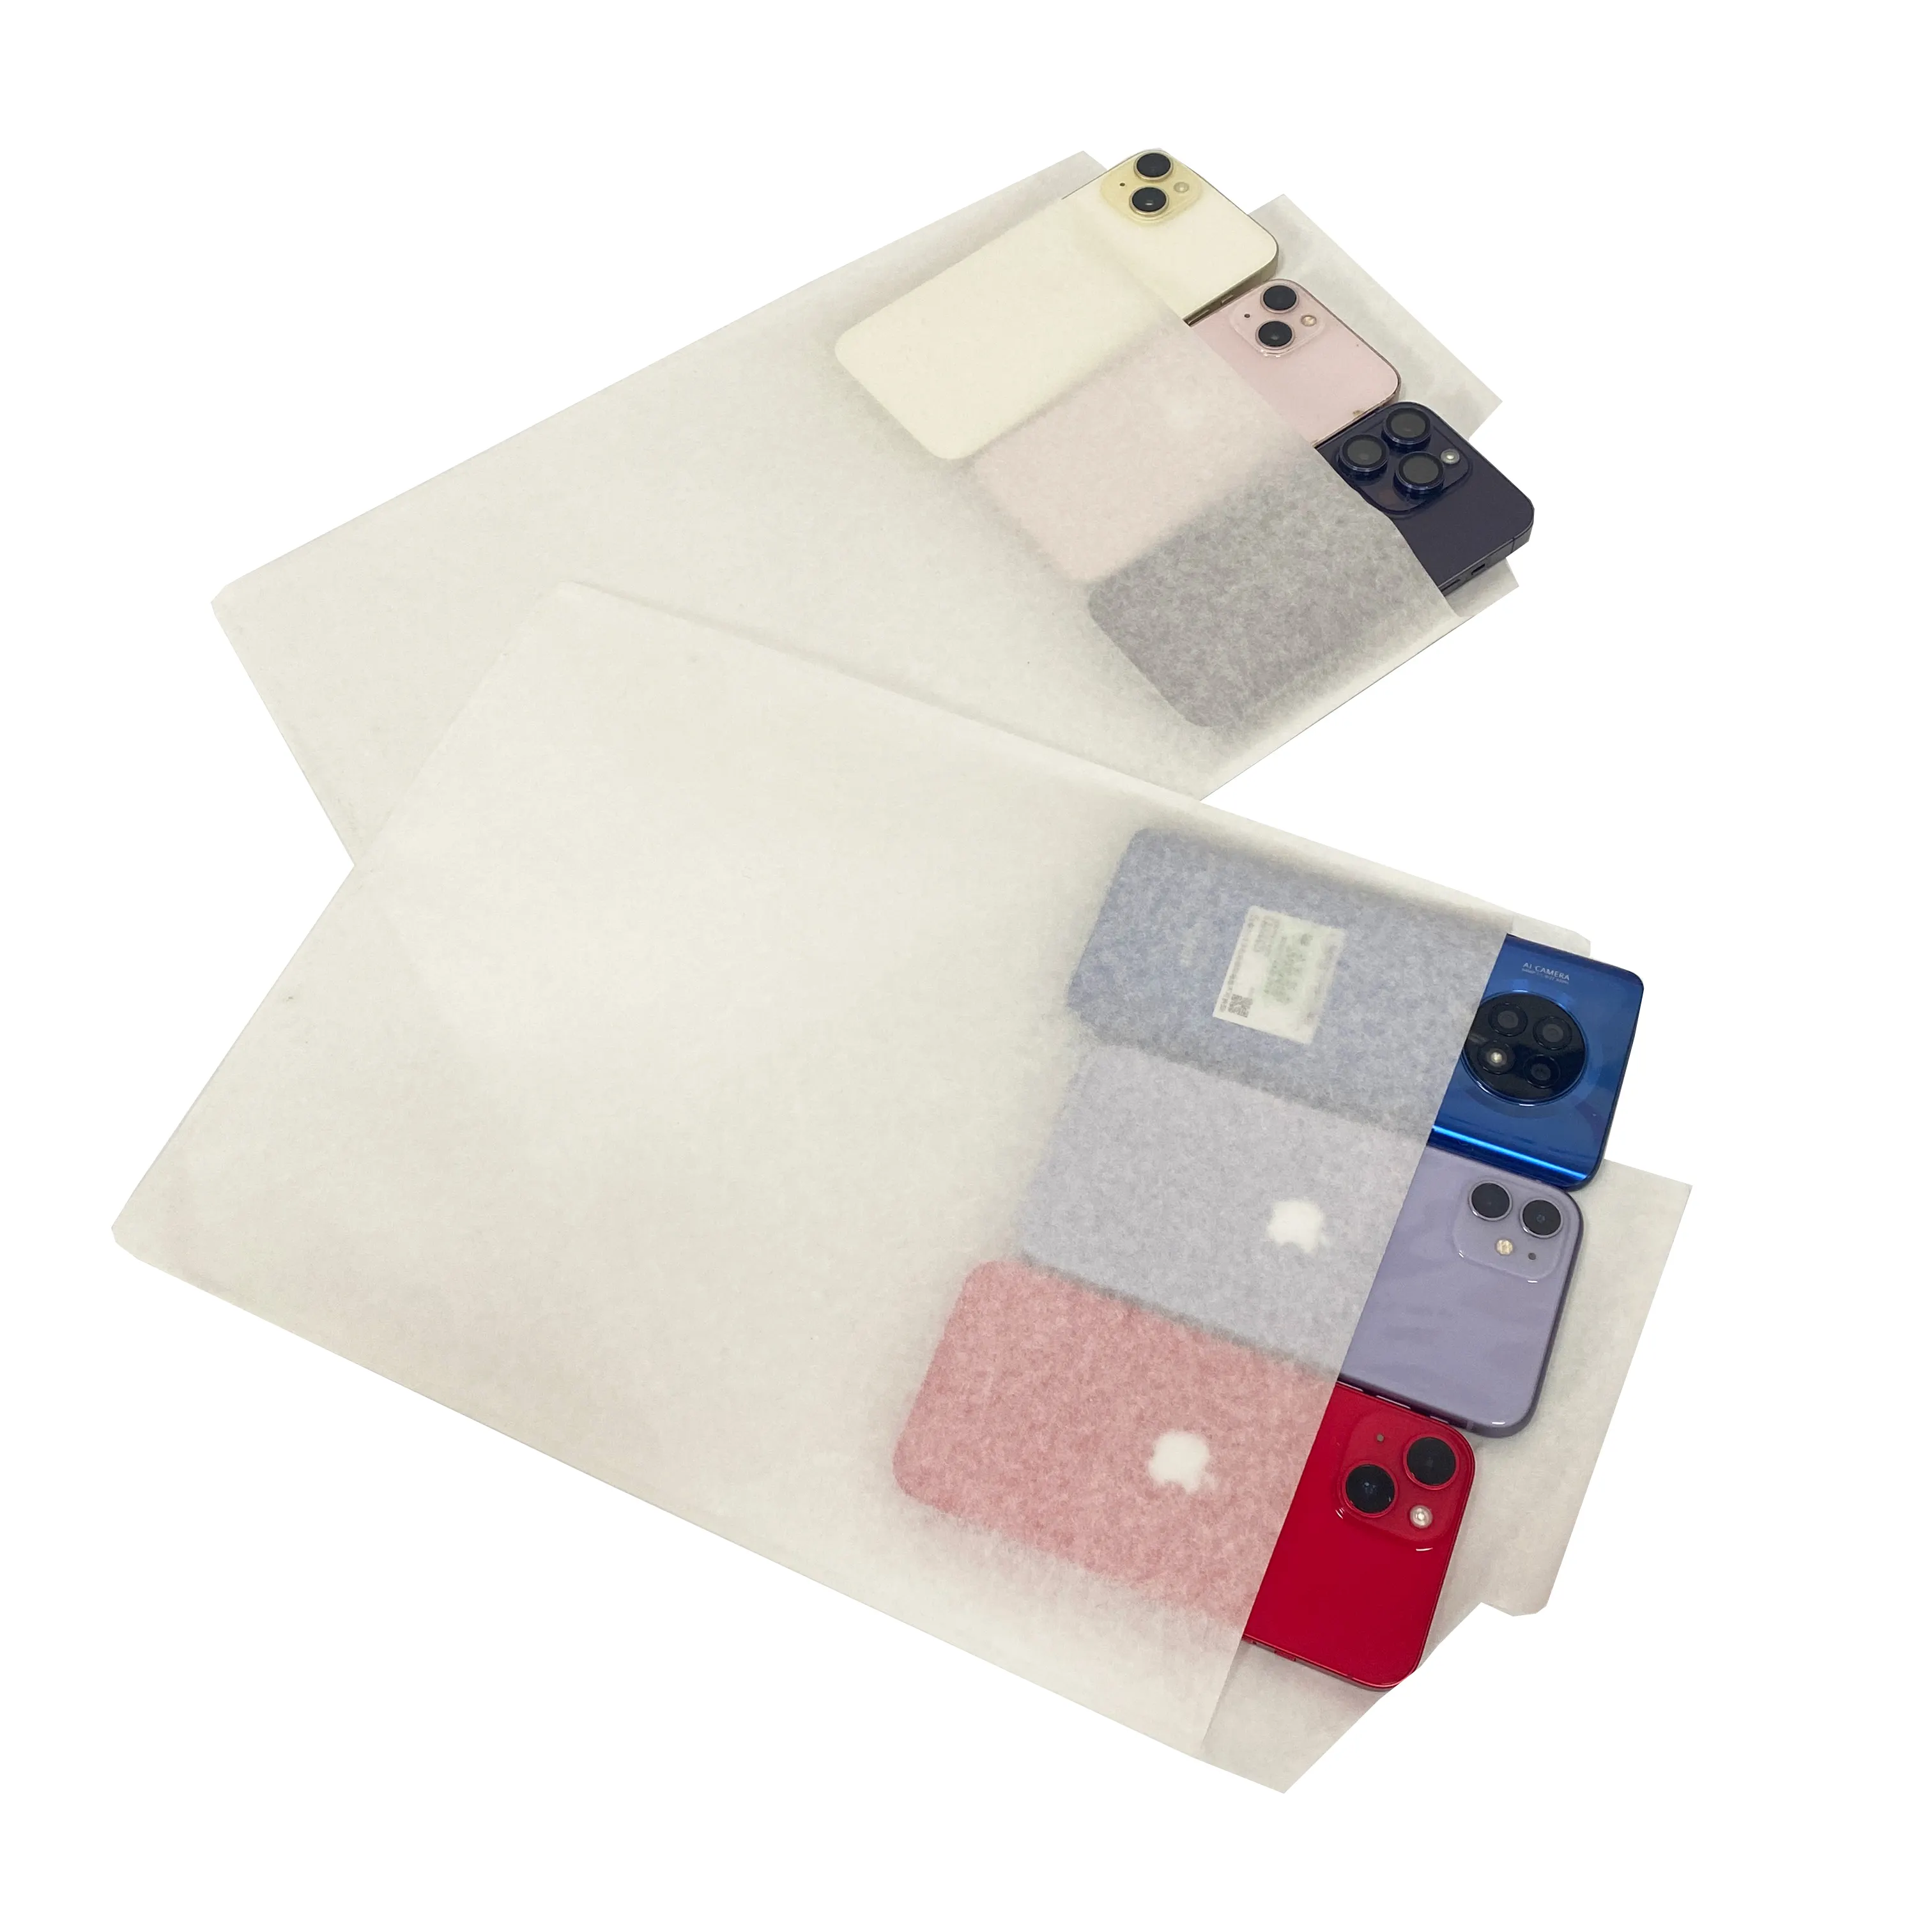 メーカーカスタマイズクラフト紙分解性電子製品包装袋